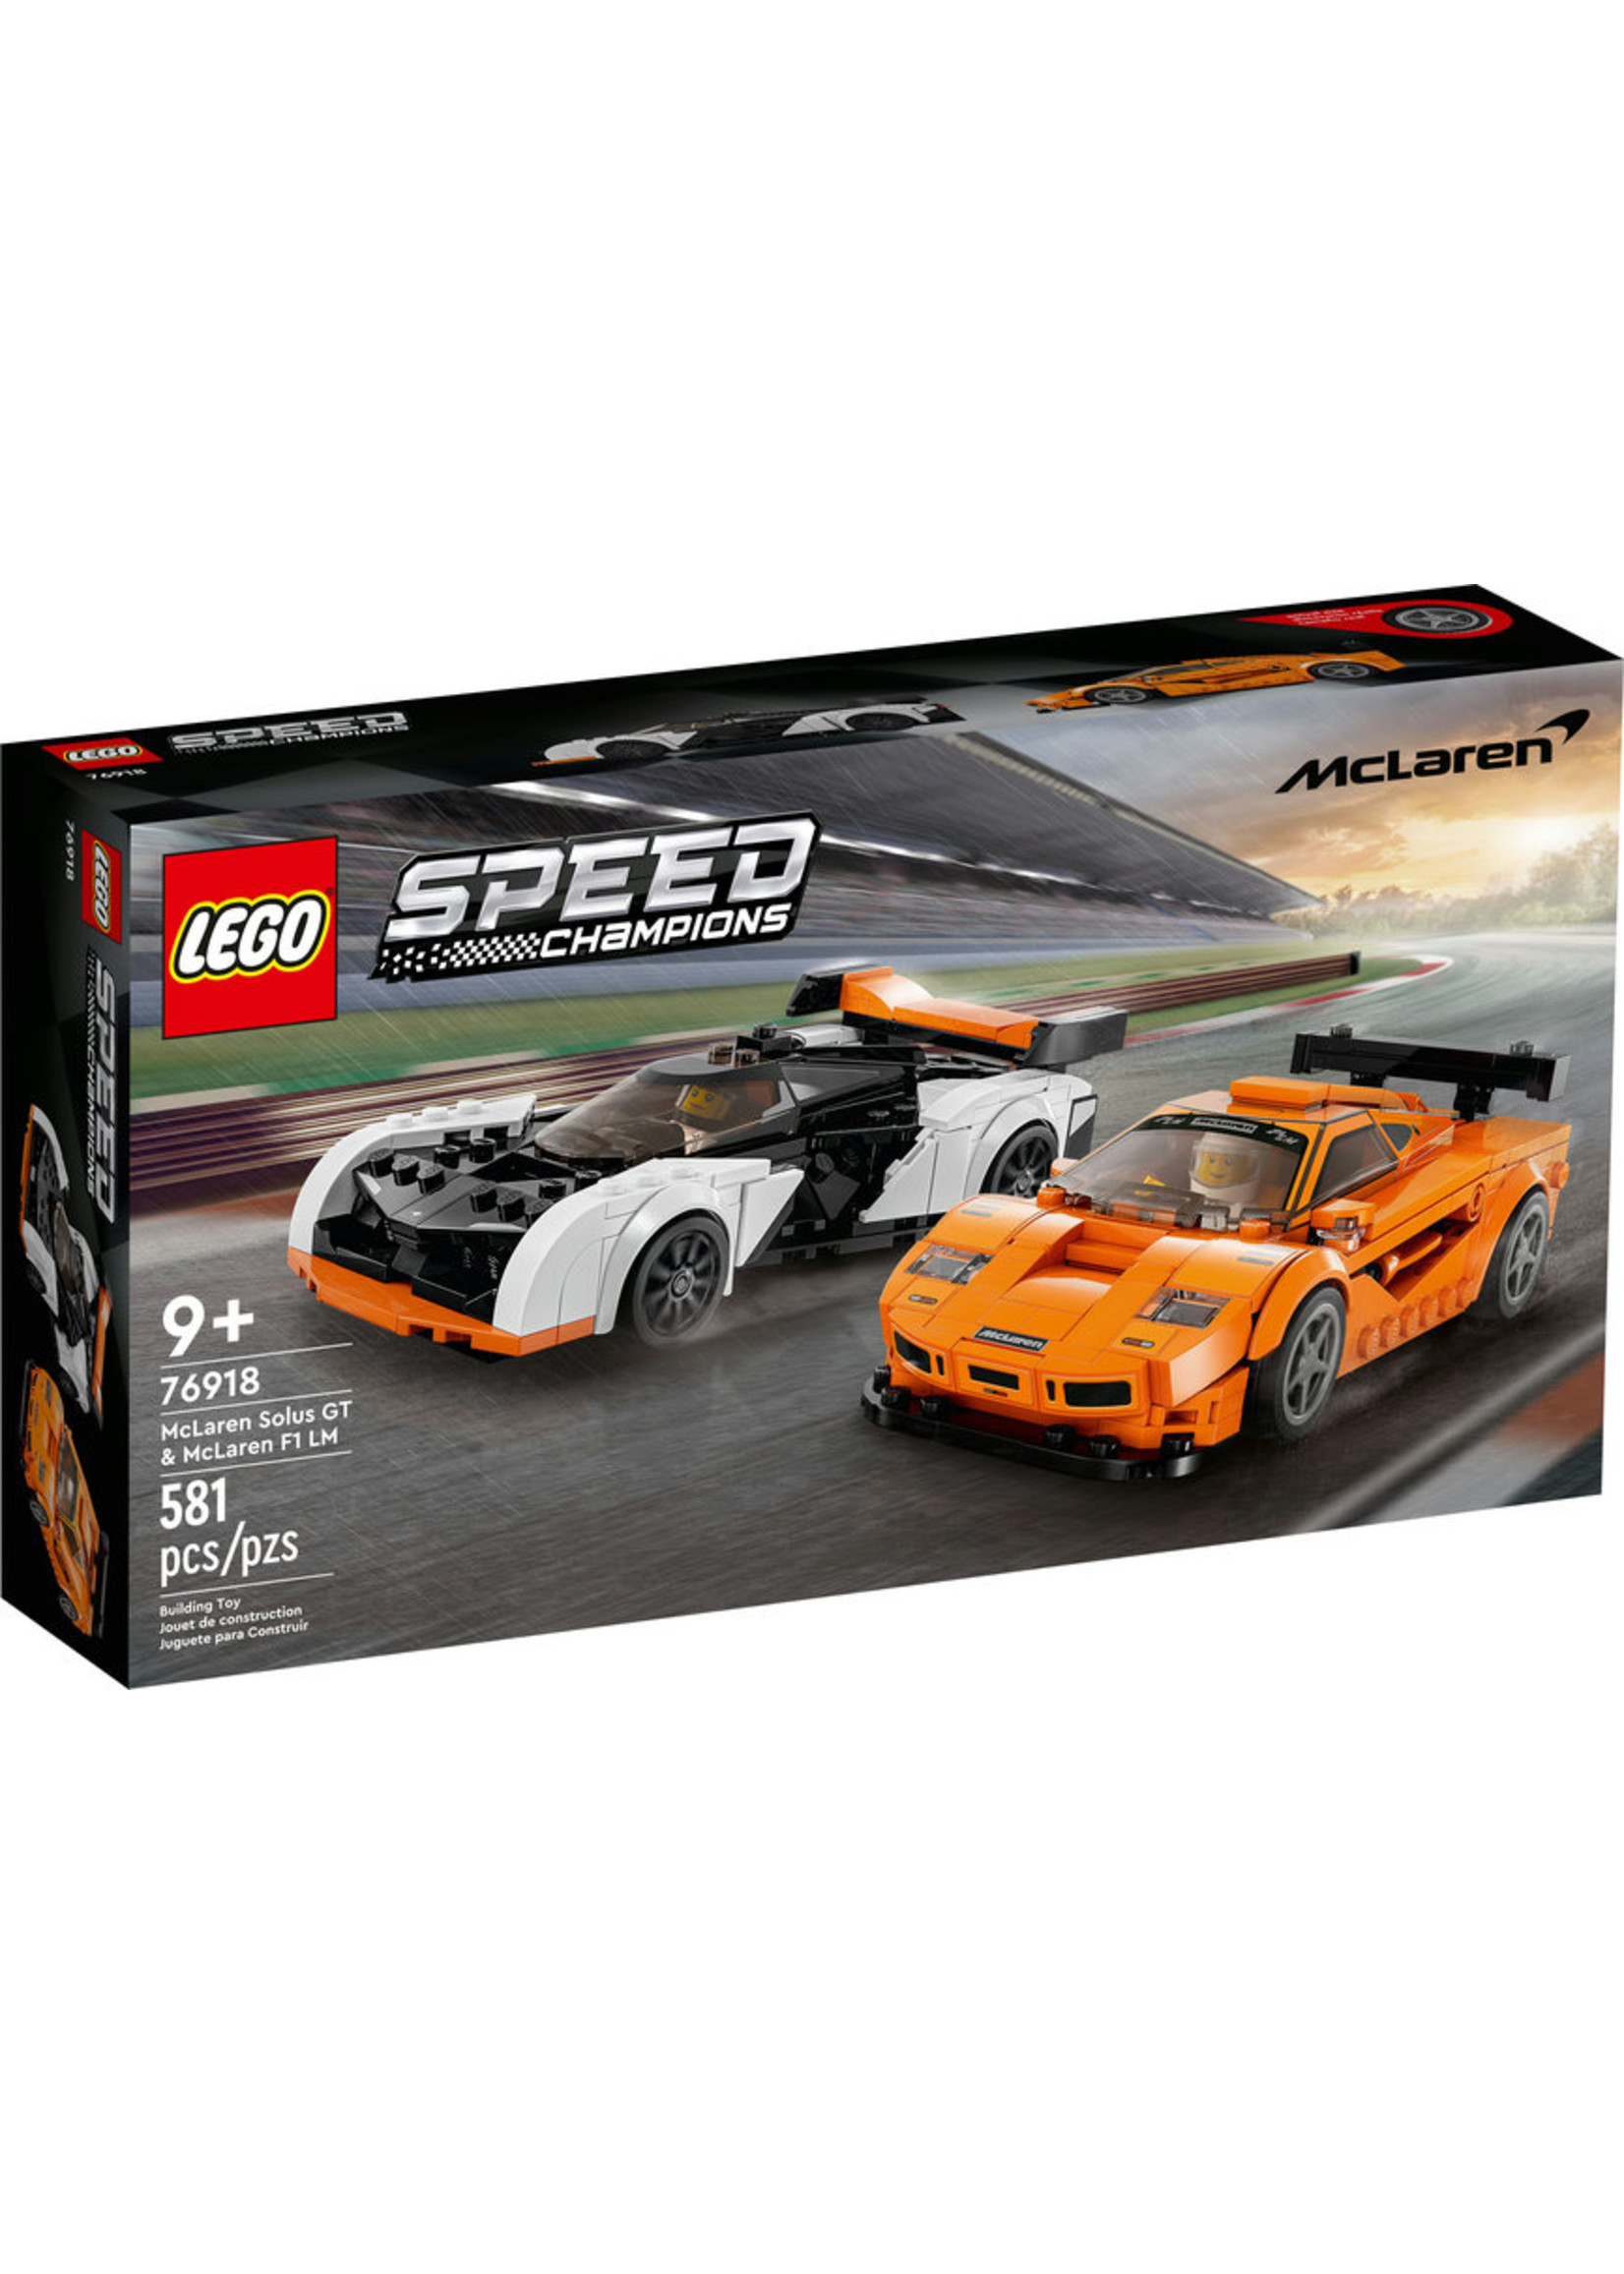 LEGO 76918 - McLaren Solus GT &F1 LM